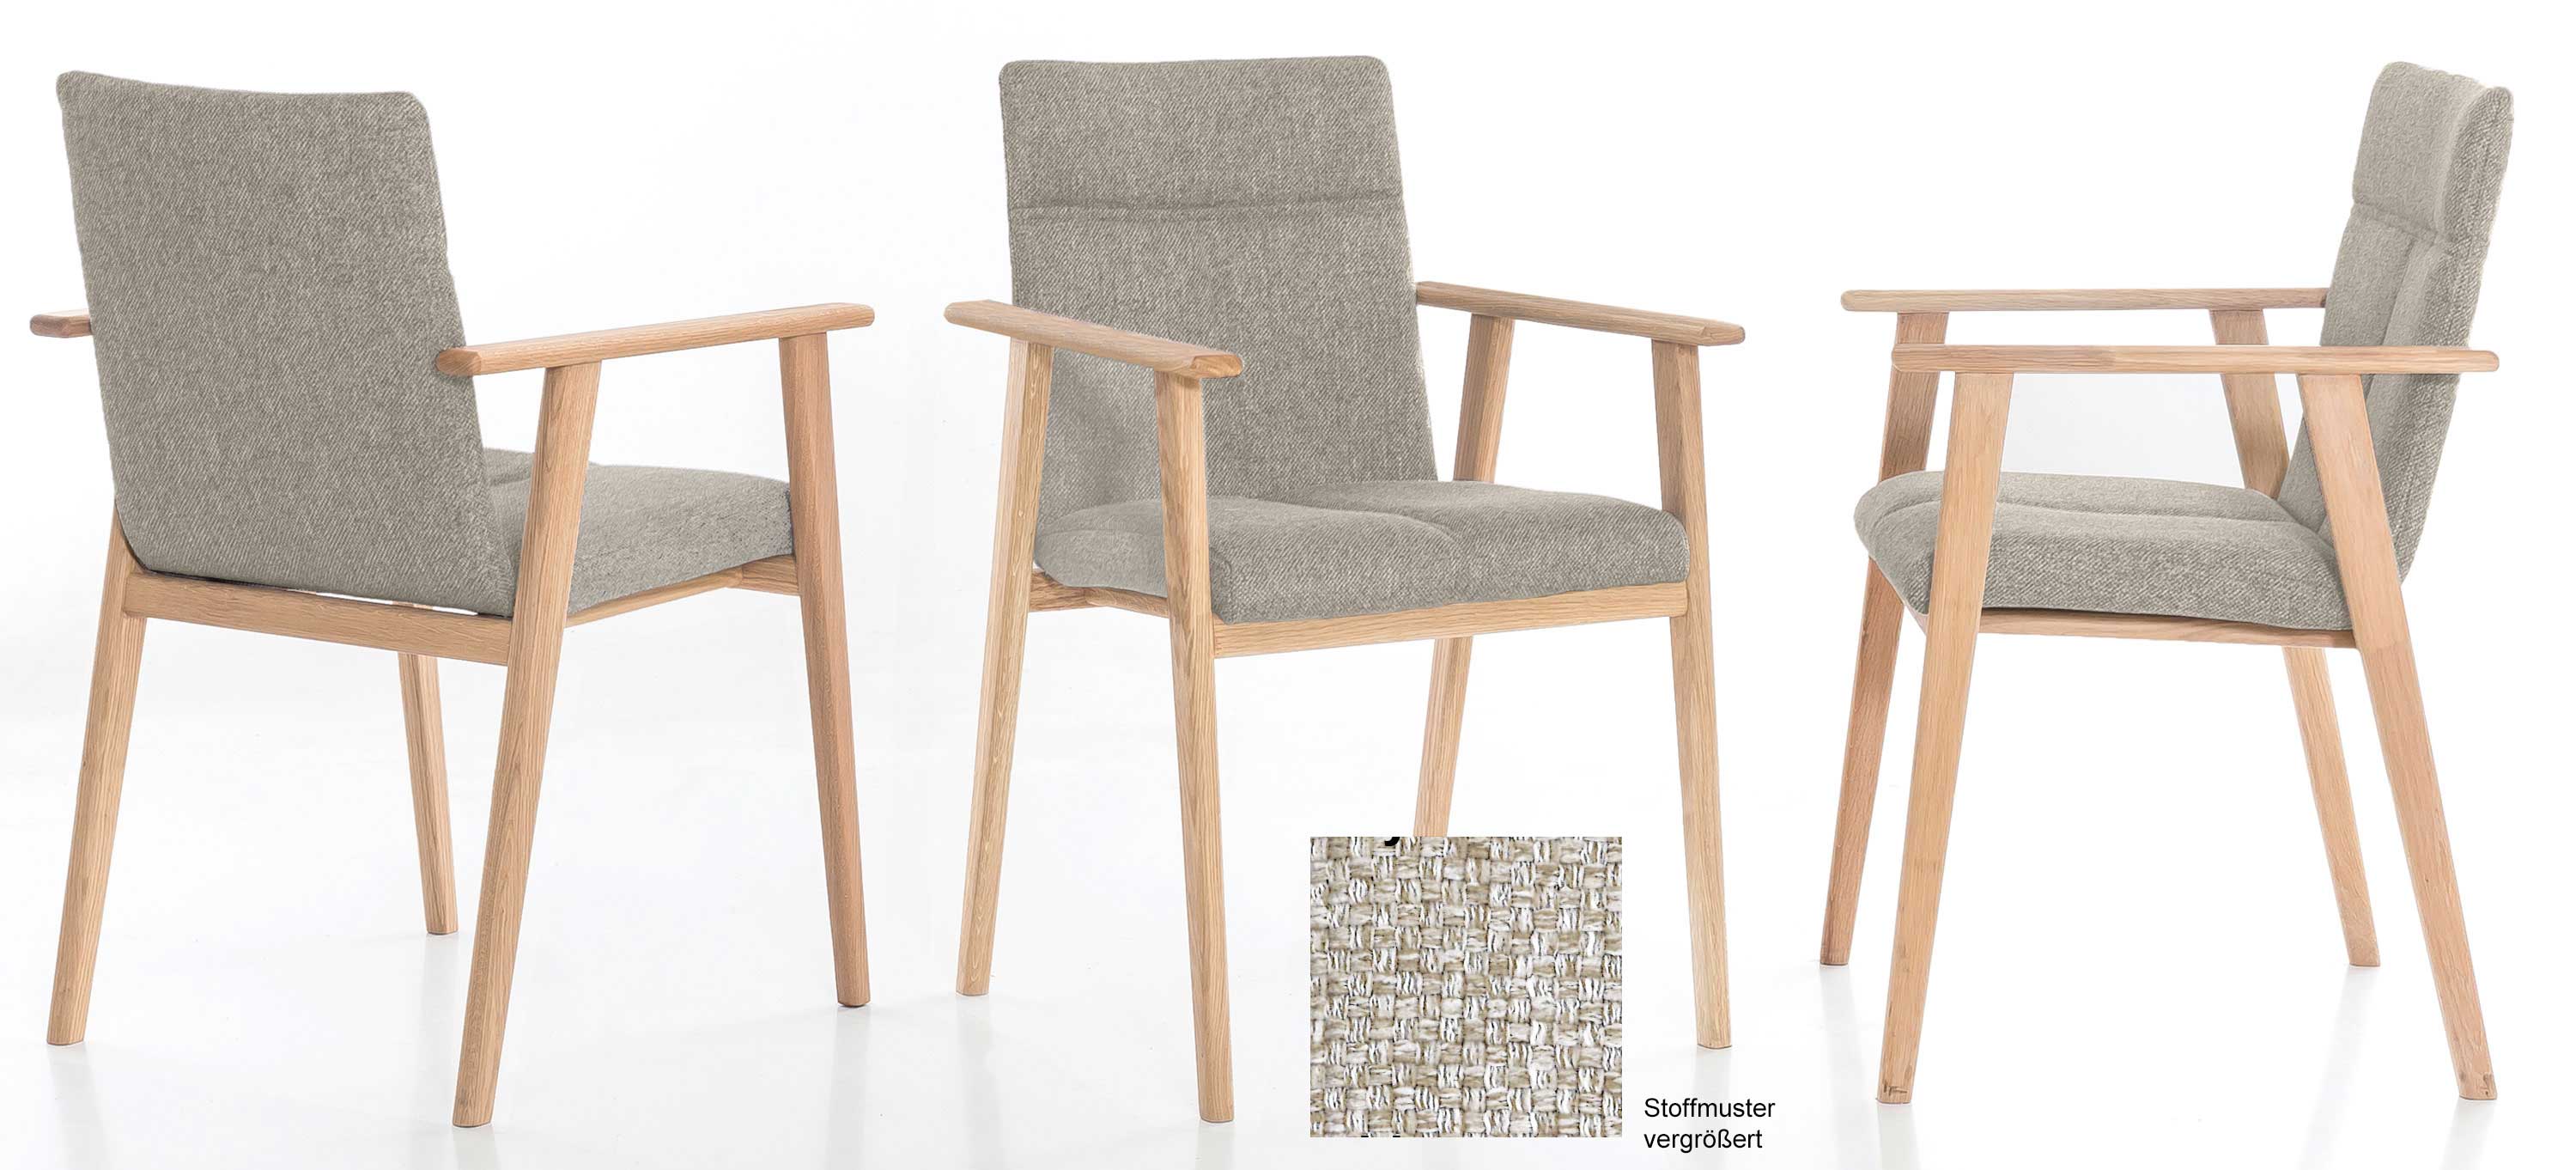 Standard Furniture Alina Armlehnstuhl eiche / beige